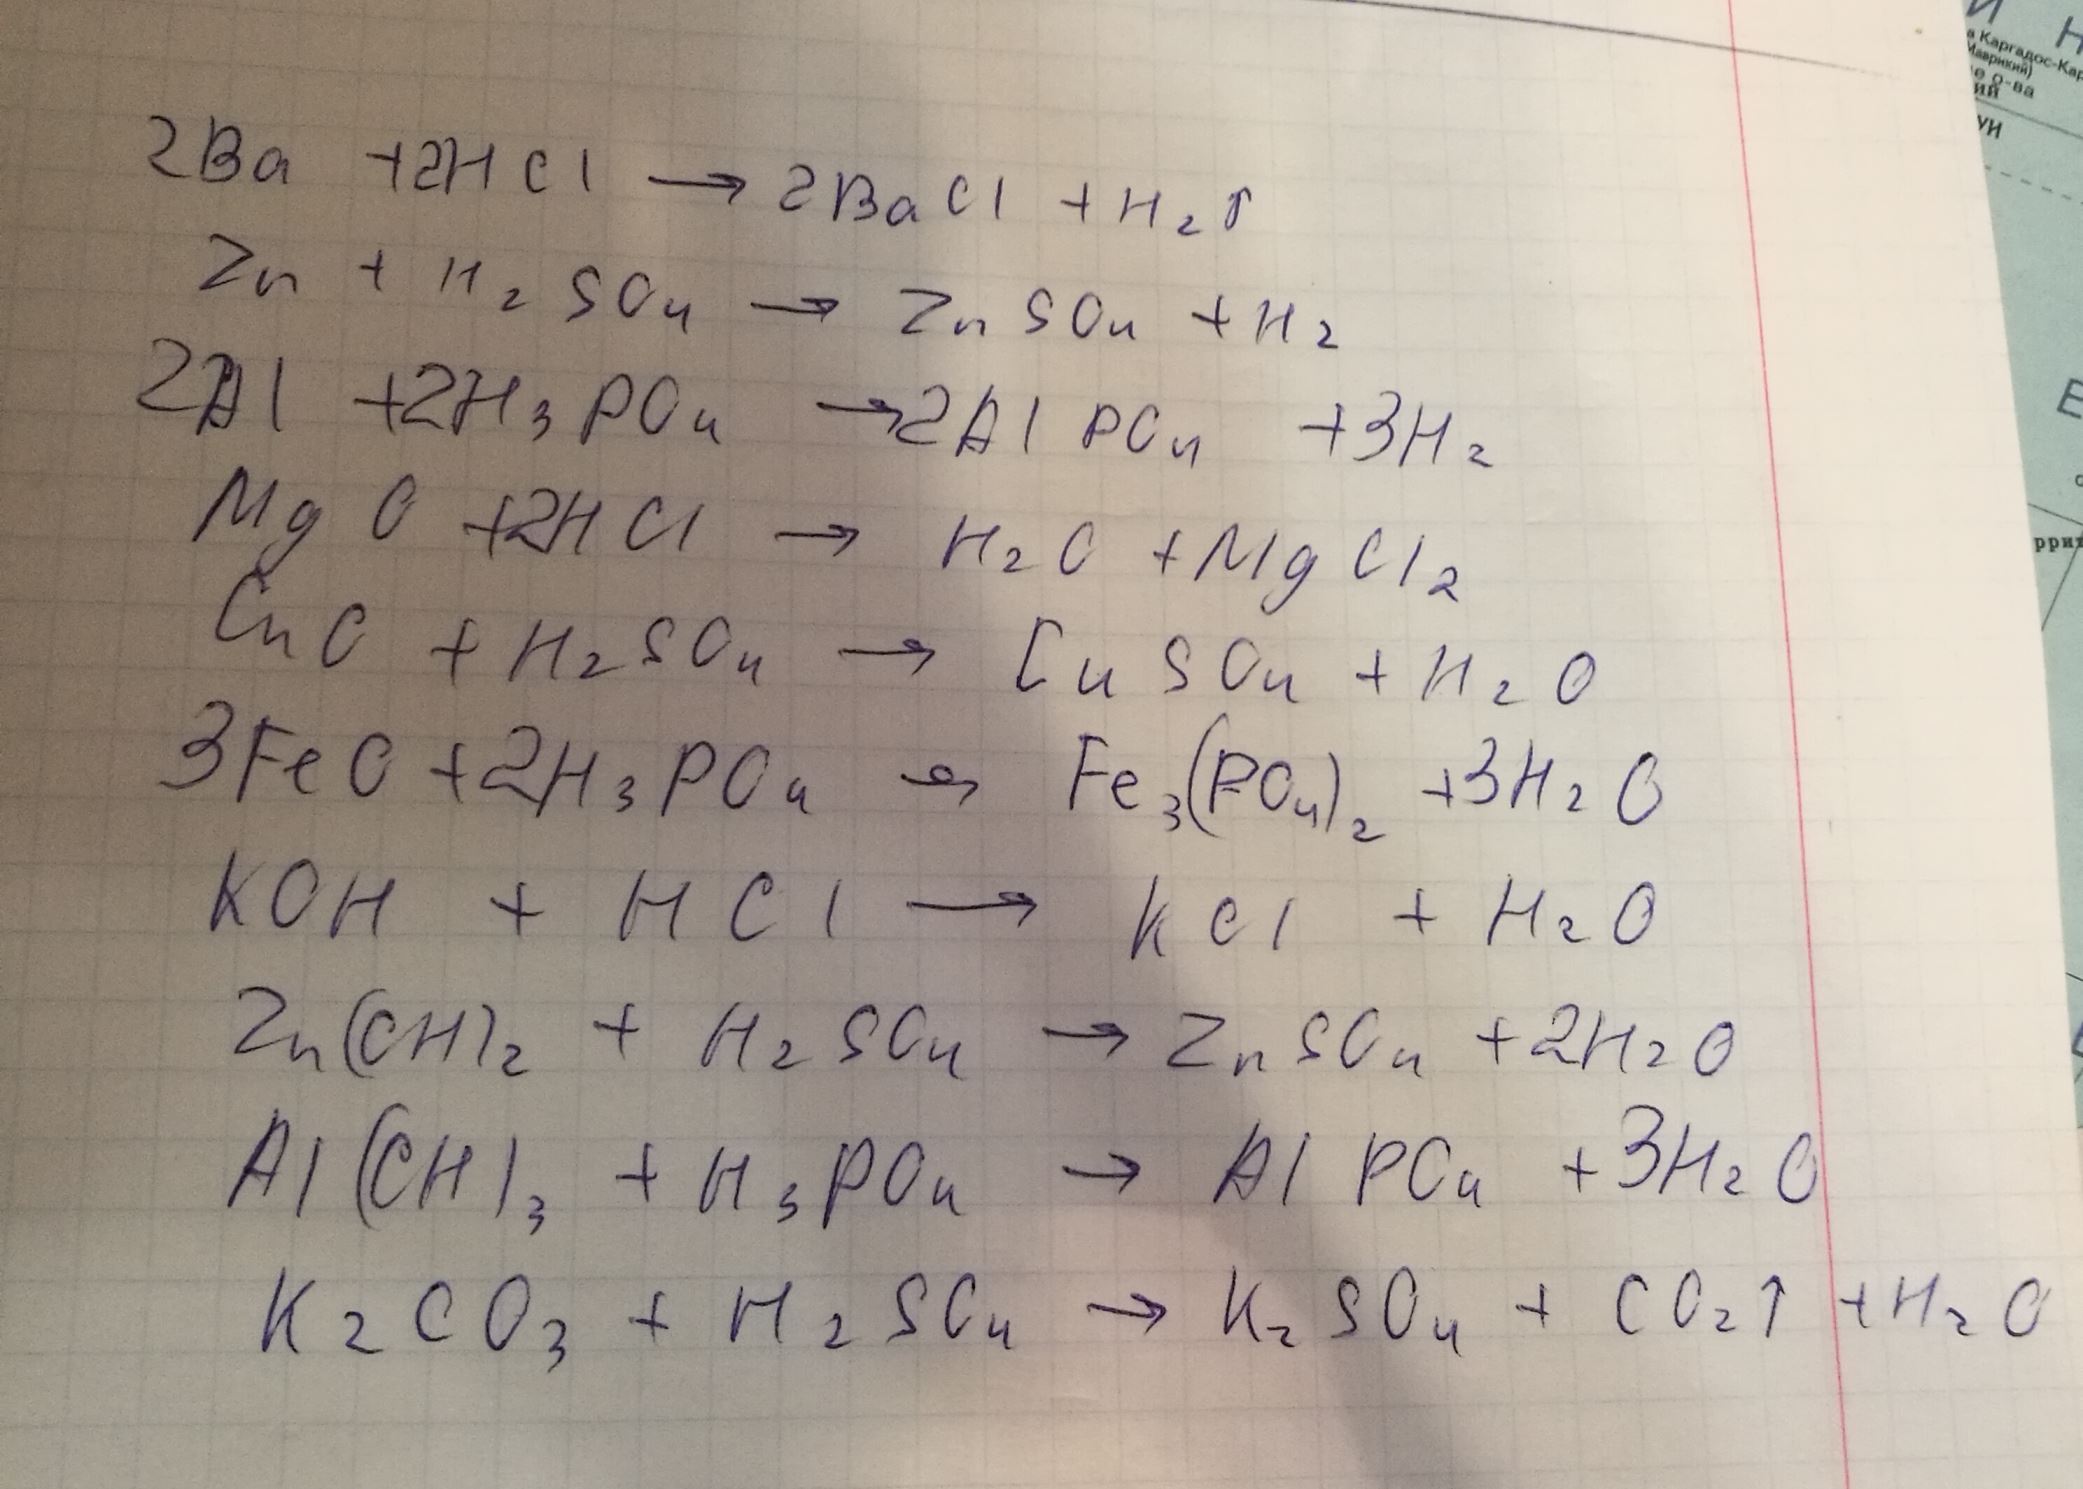 Ba+HCl= Zn+H2SO4= Al+H3PO4= MgO+HCl= CuO+H2SO4= FeO+H3PO4= KOH+HCl= Zn(...